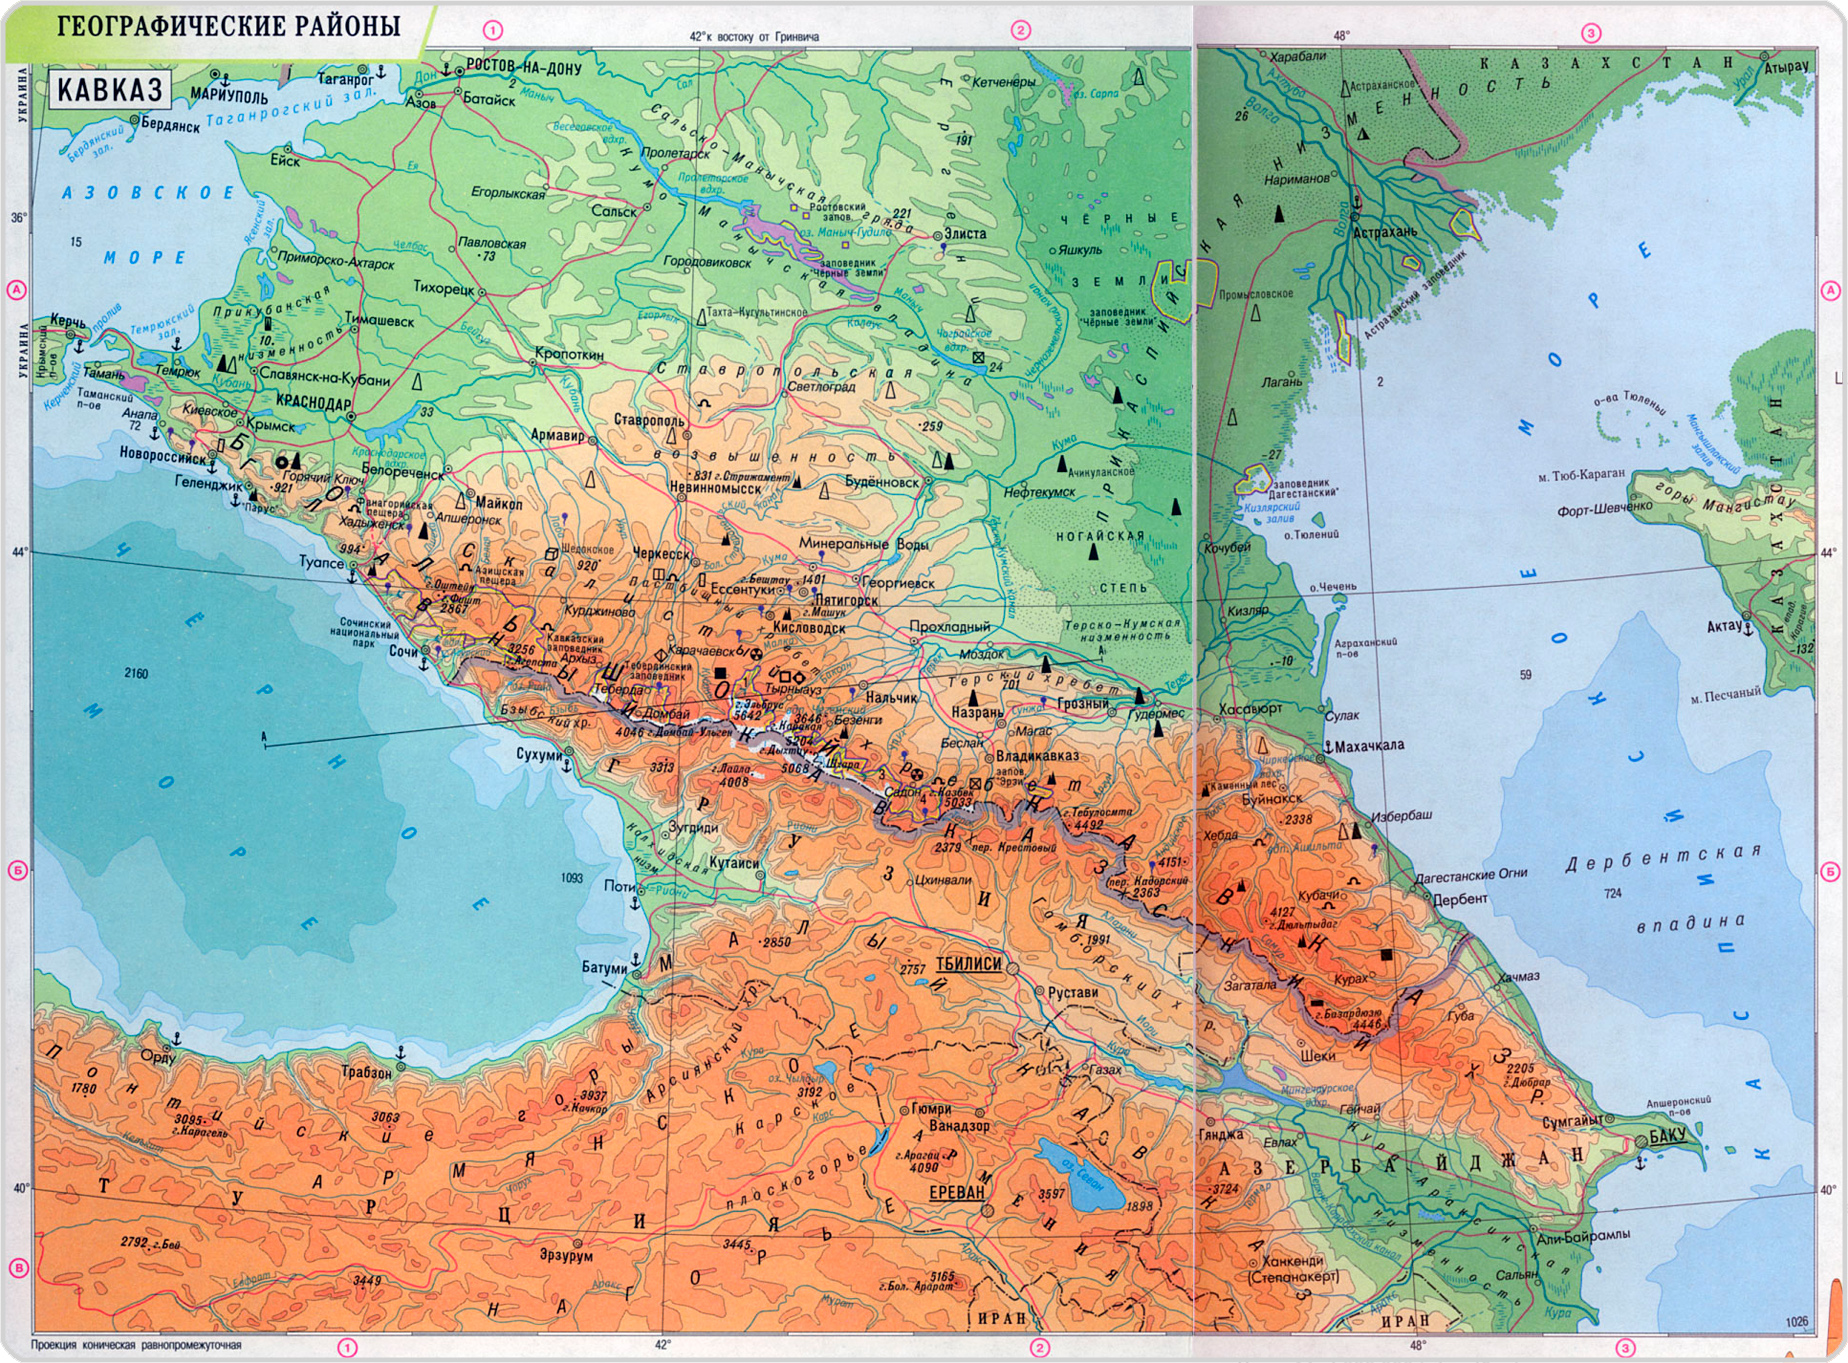 Северный кавказ: карта и этапы исследования